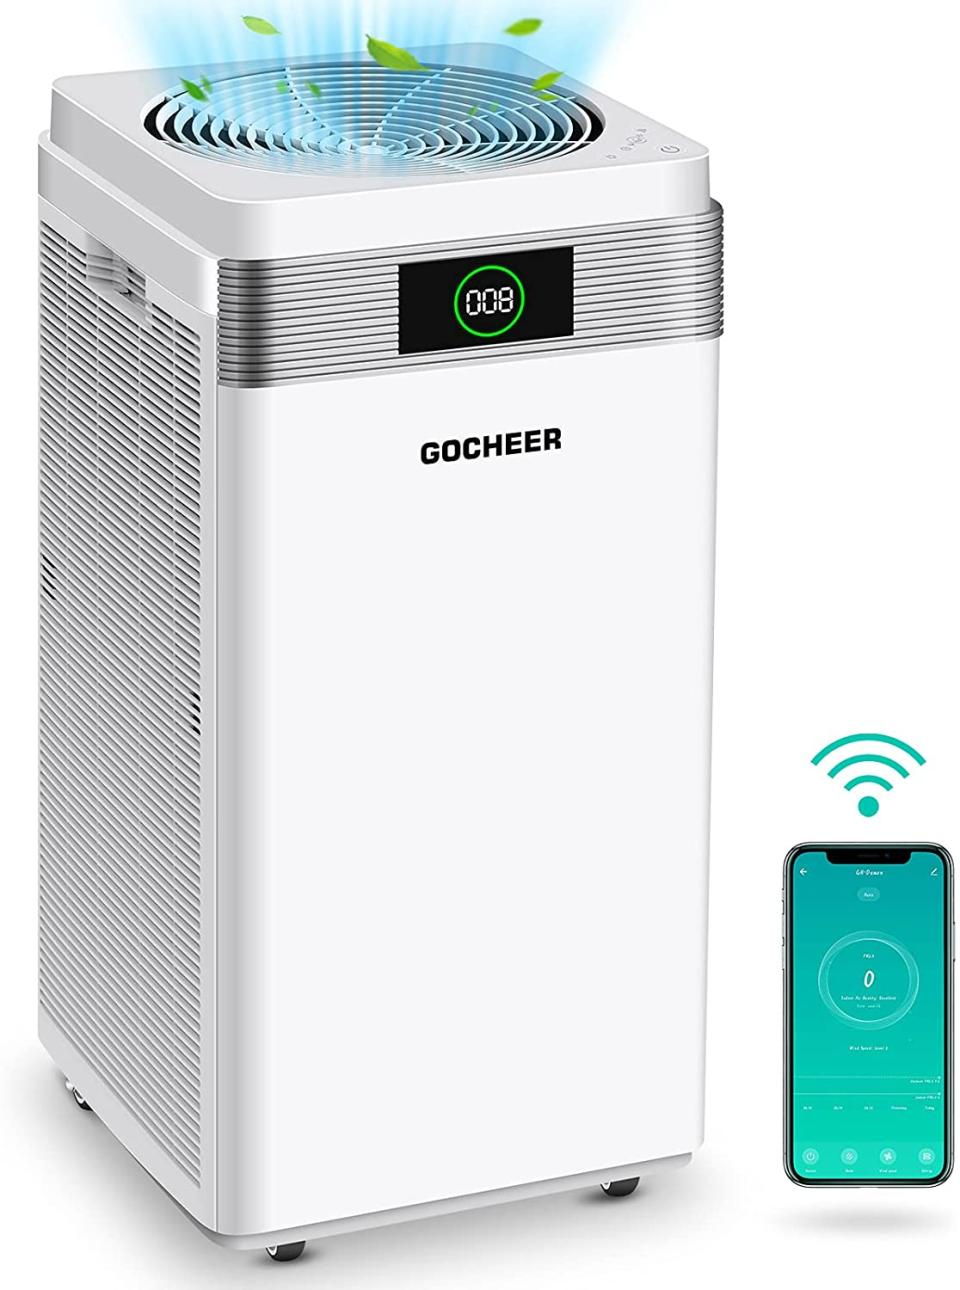 gocheer air purifier smart device, best air purifiers